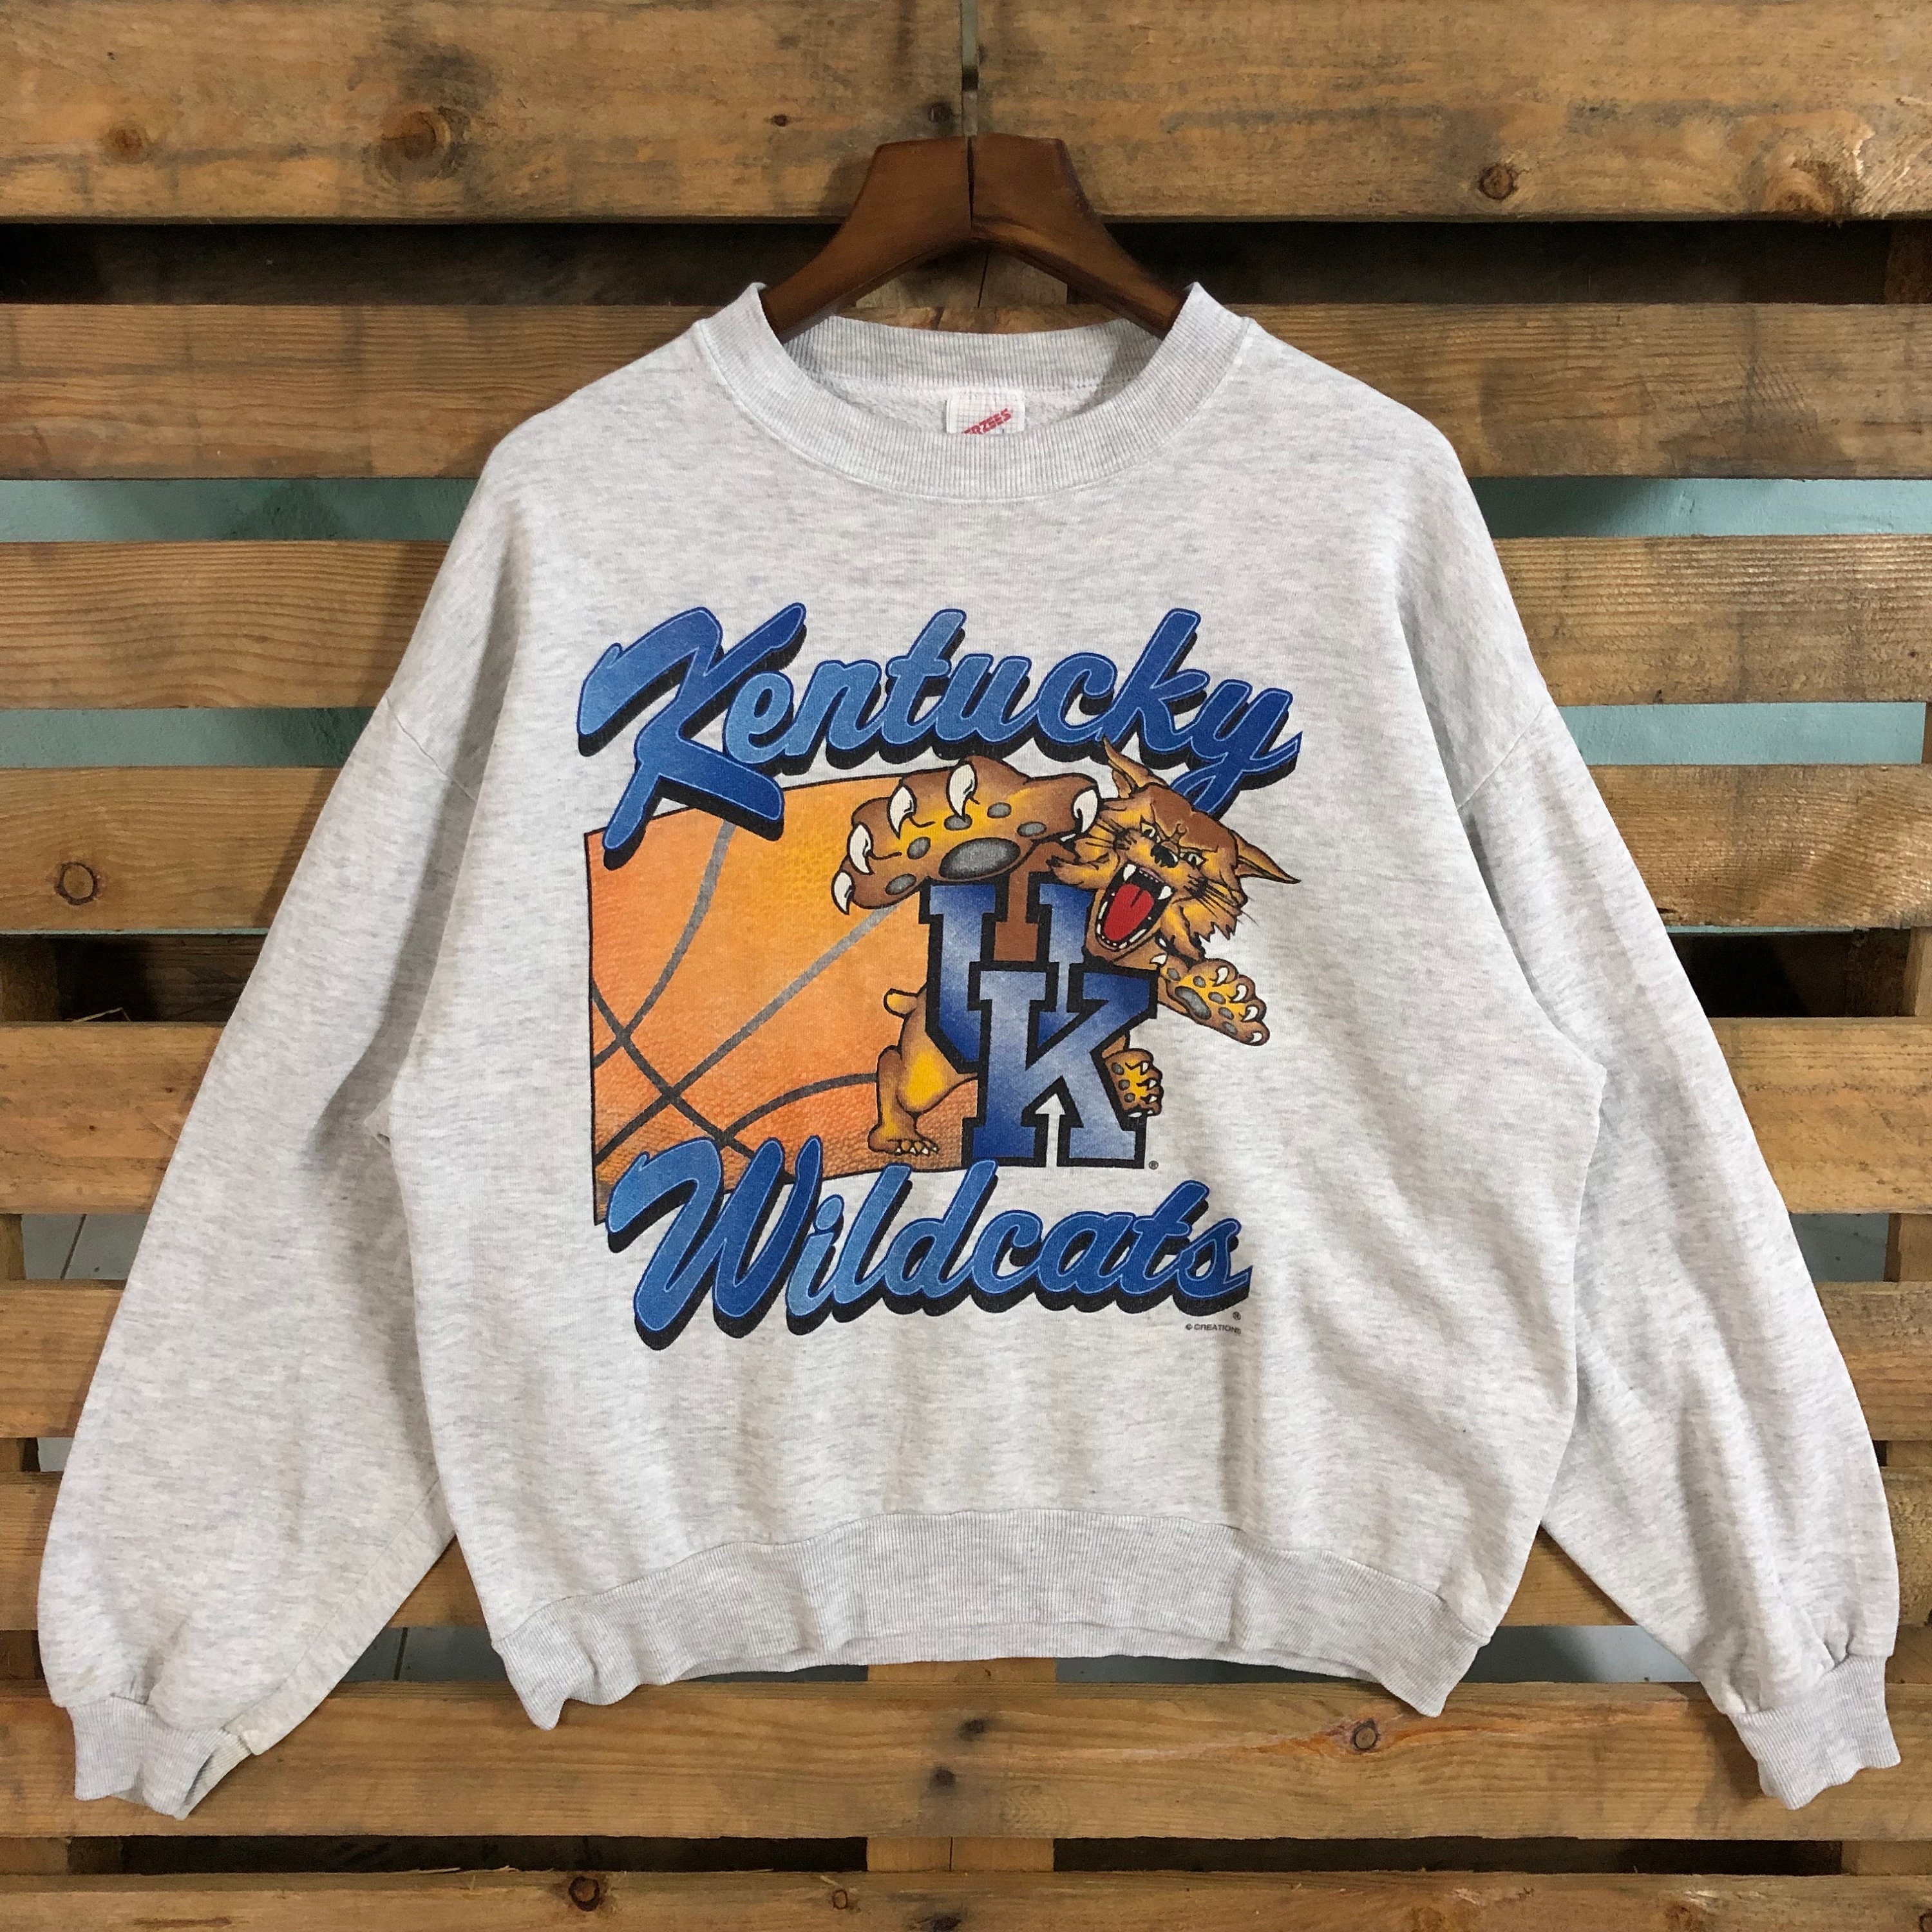 Louisville Adult District Grey Crewneck Sweatshirt – Kentucky